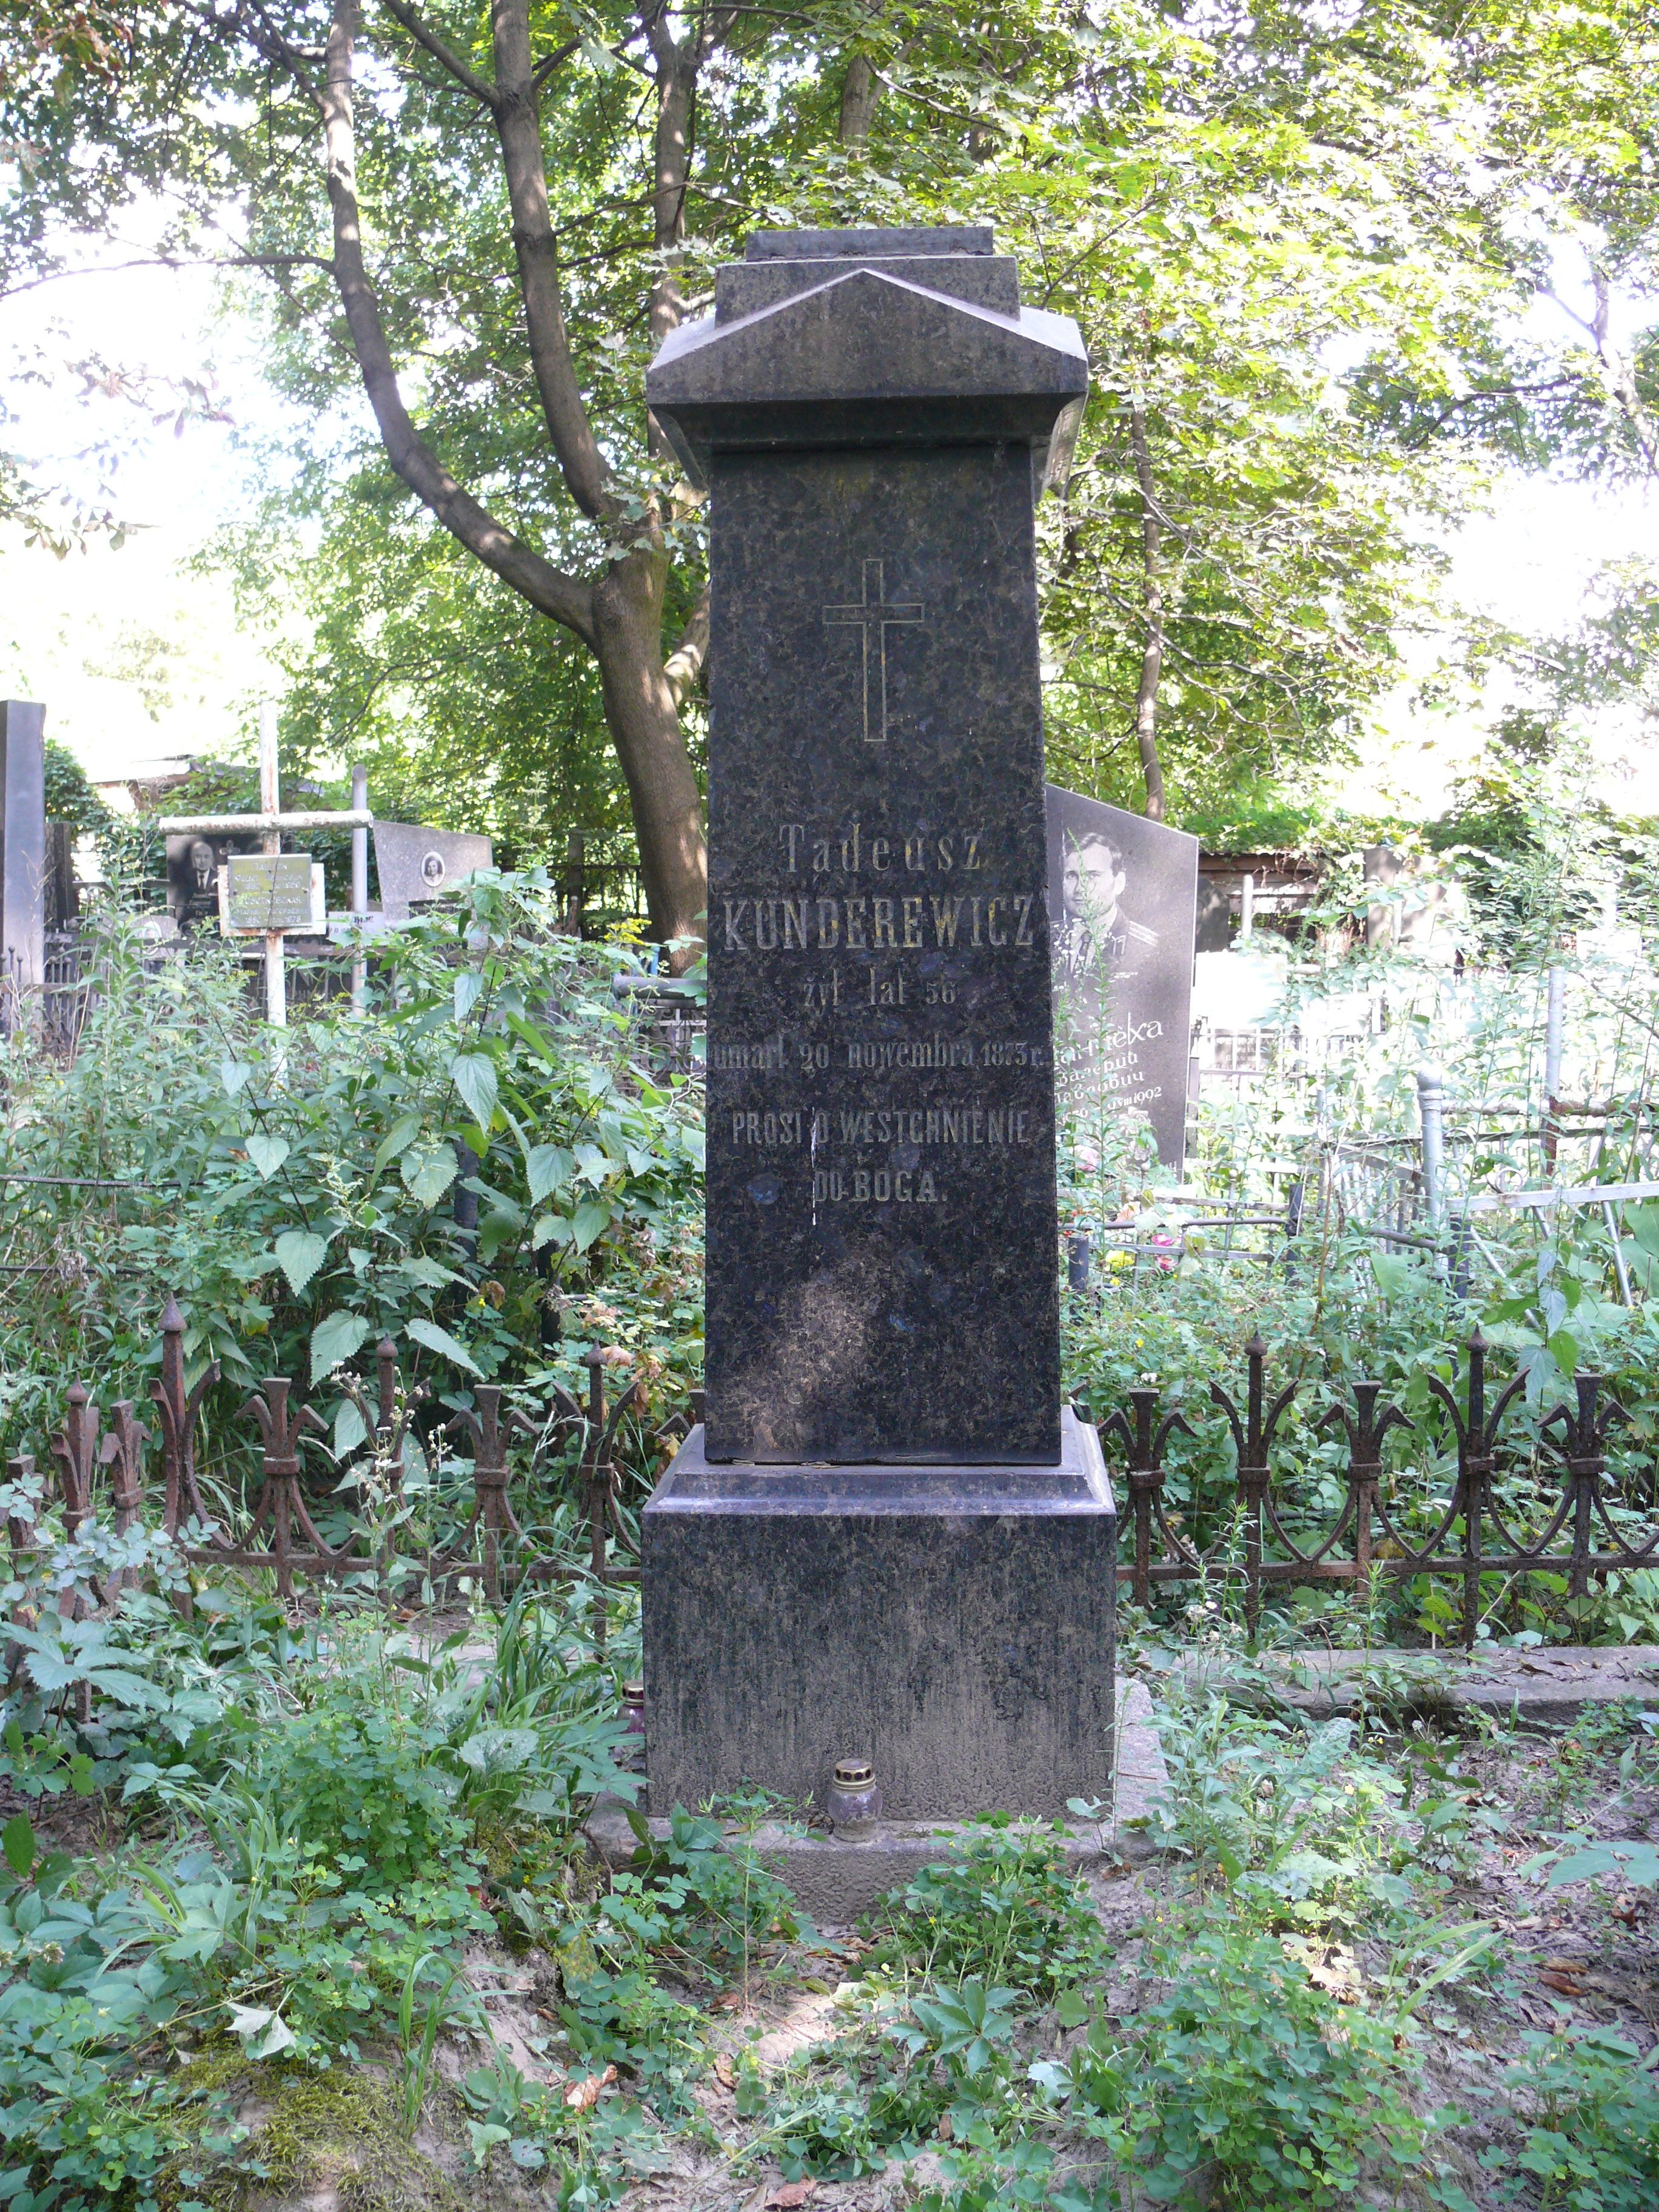 Tombstone of Tadeusz Kunderewicz